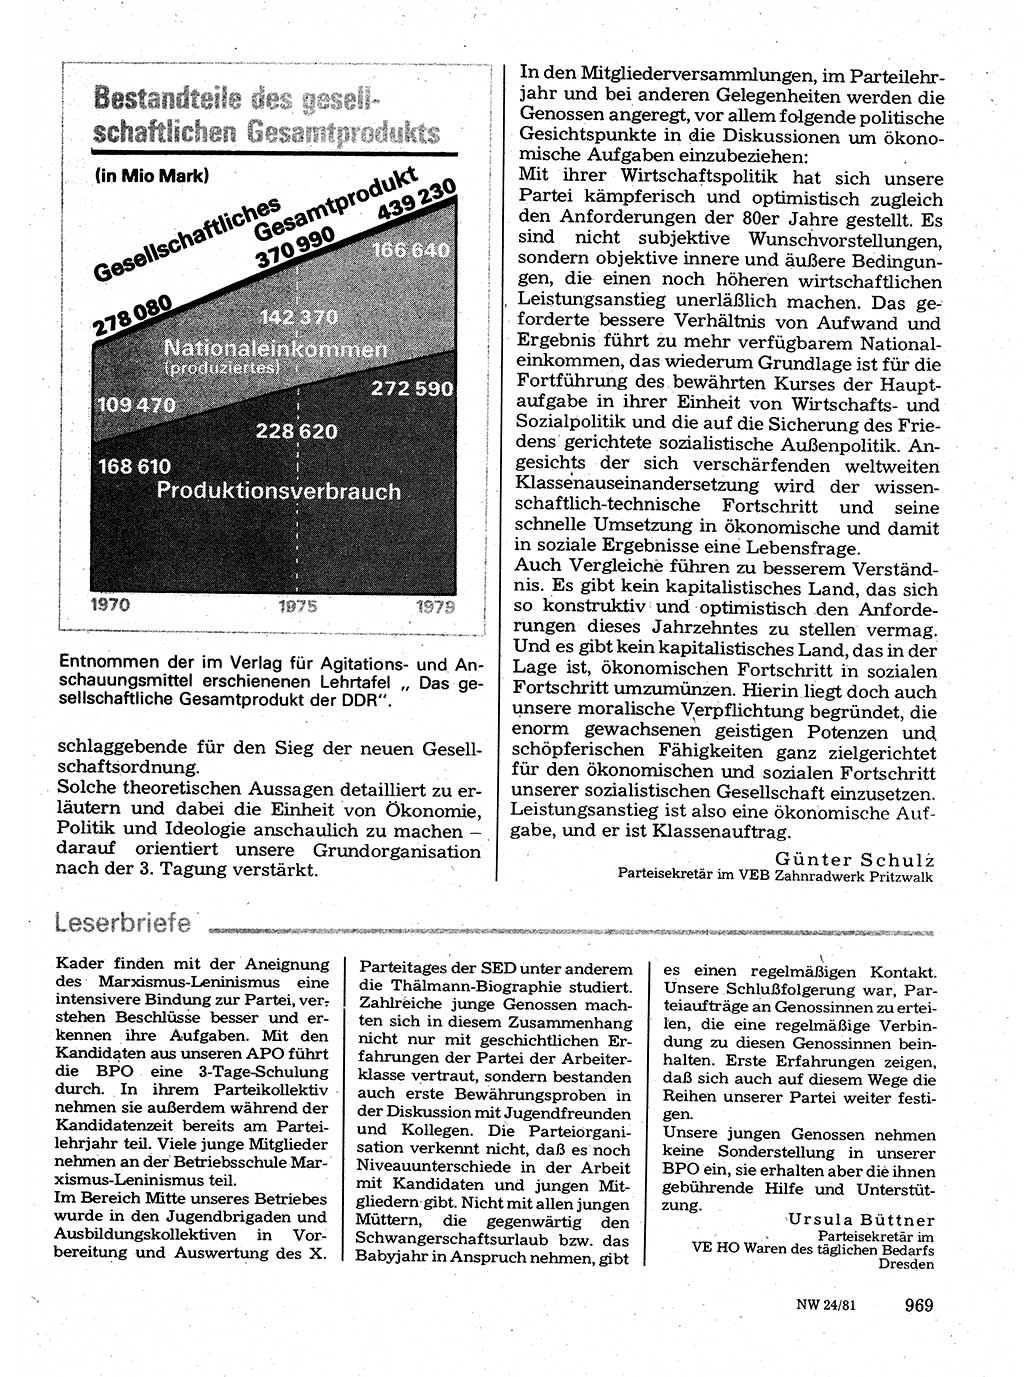 Neuer Weg (NW), Organ des Zentralkomitees (ZK) der SED (Sozialistische Einheitspartei Deutschlands) für Fragen des Parteilebens, 36. Jahrgang [Deutsche Demokratische Republik (DDR)] 1981, Seite 969 (NW ZK SED DDR 1981, S. 969)